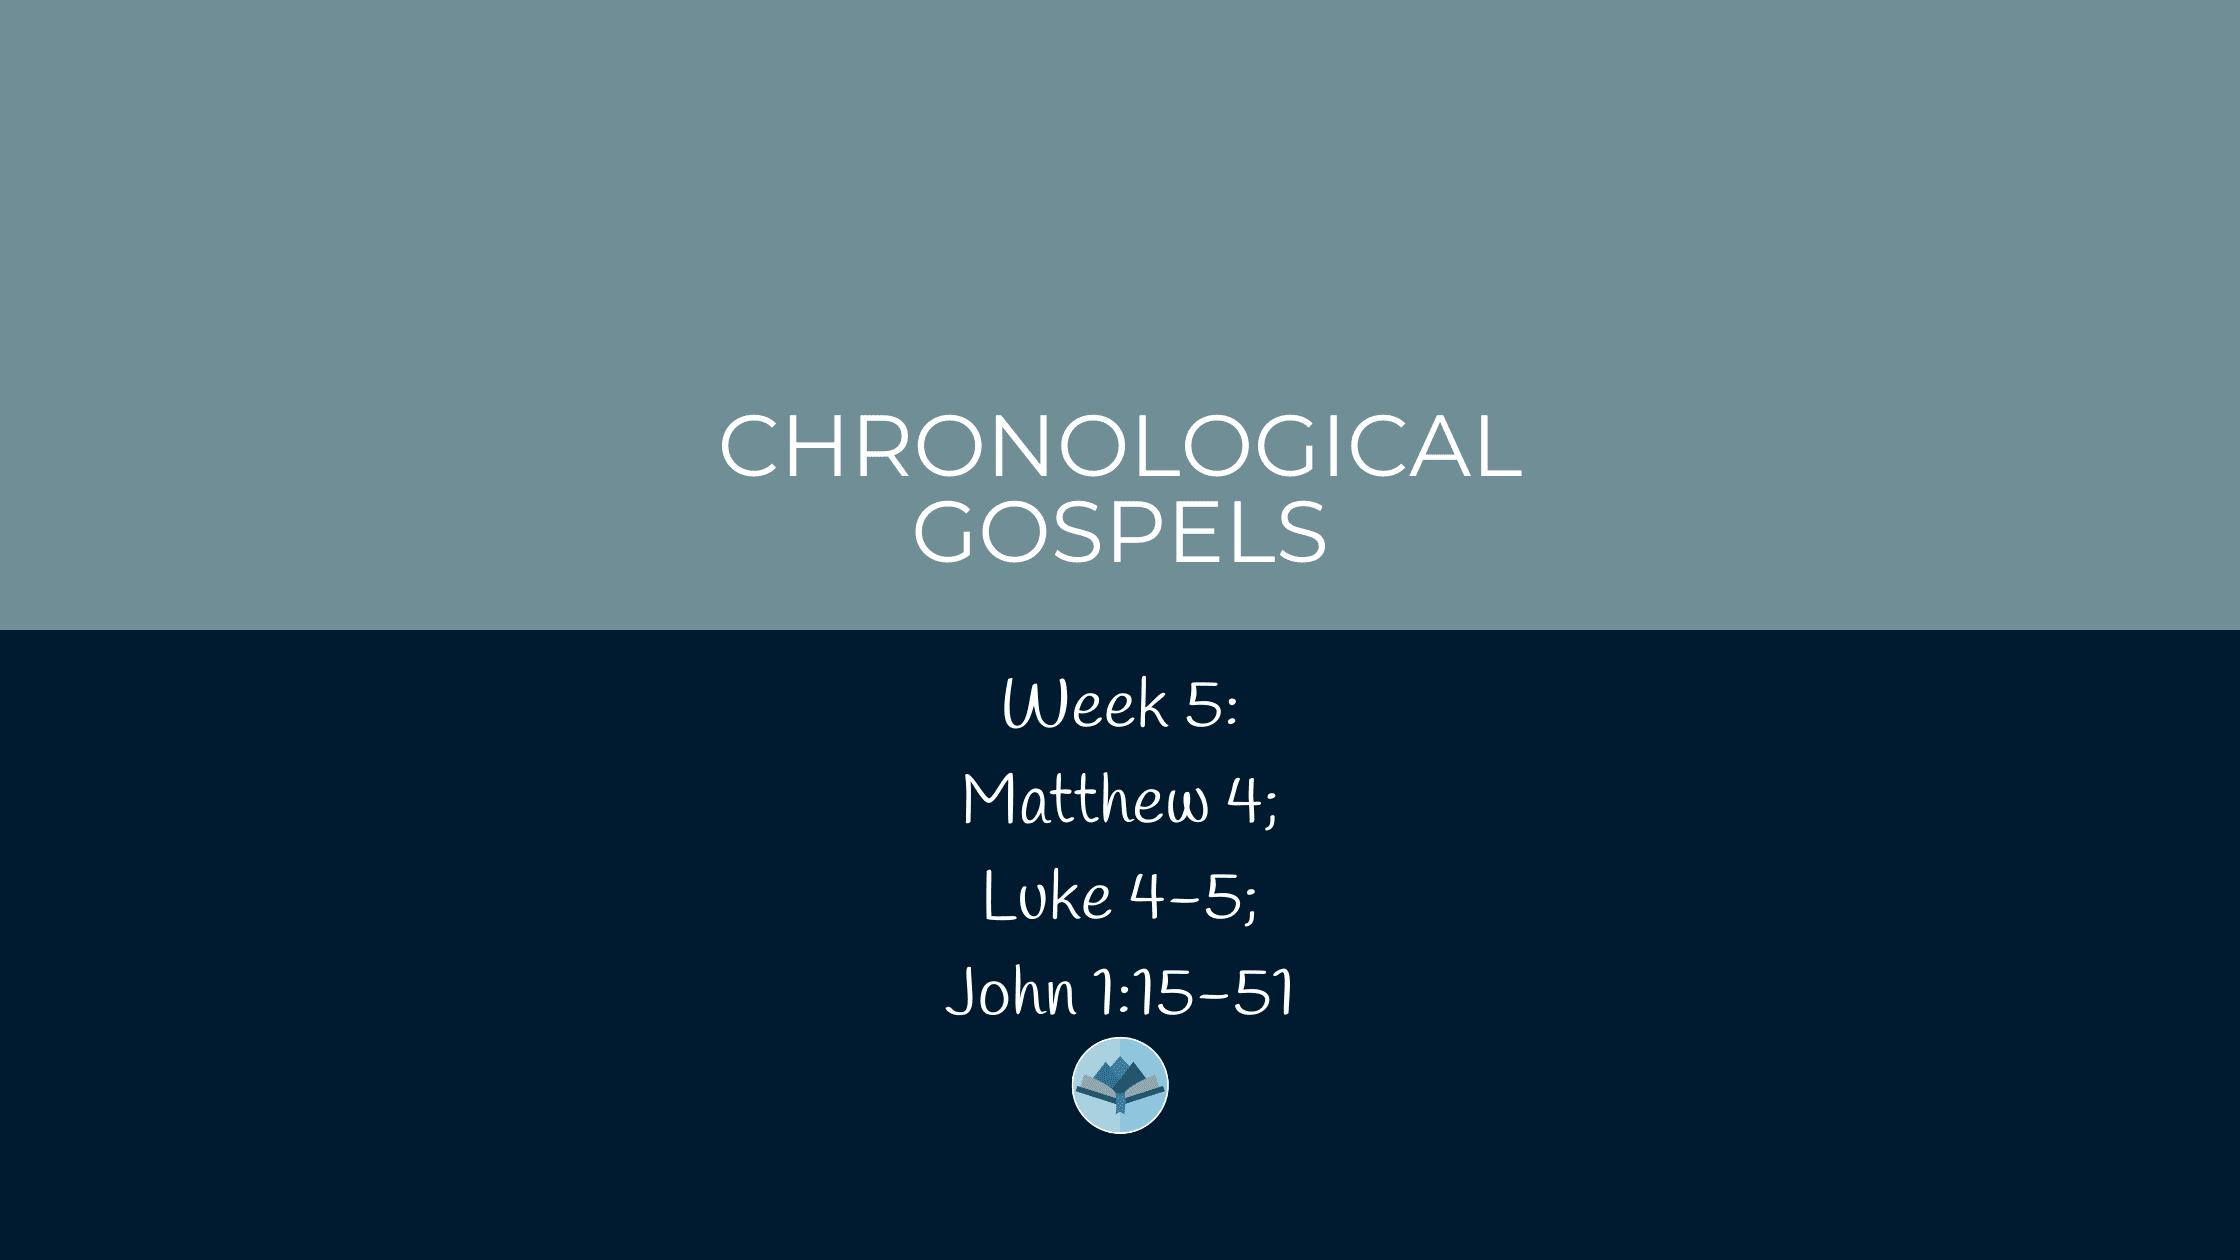 Chronological Gospels: Matthew 4; Luke 4-5; John 1:15-51